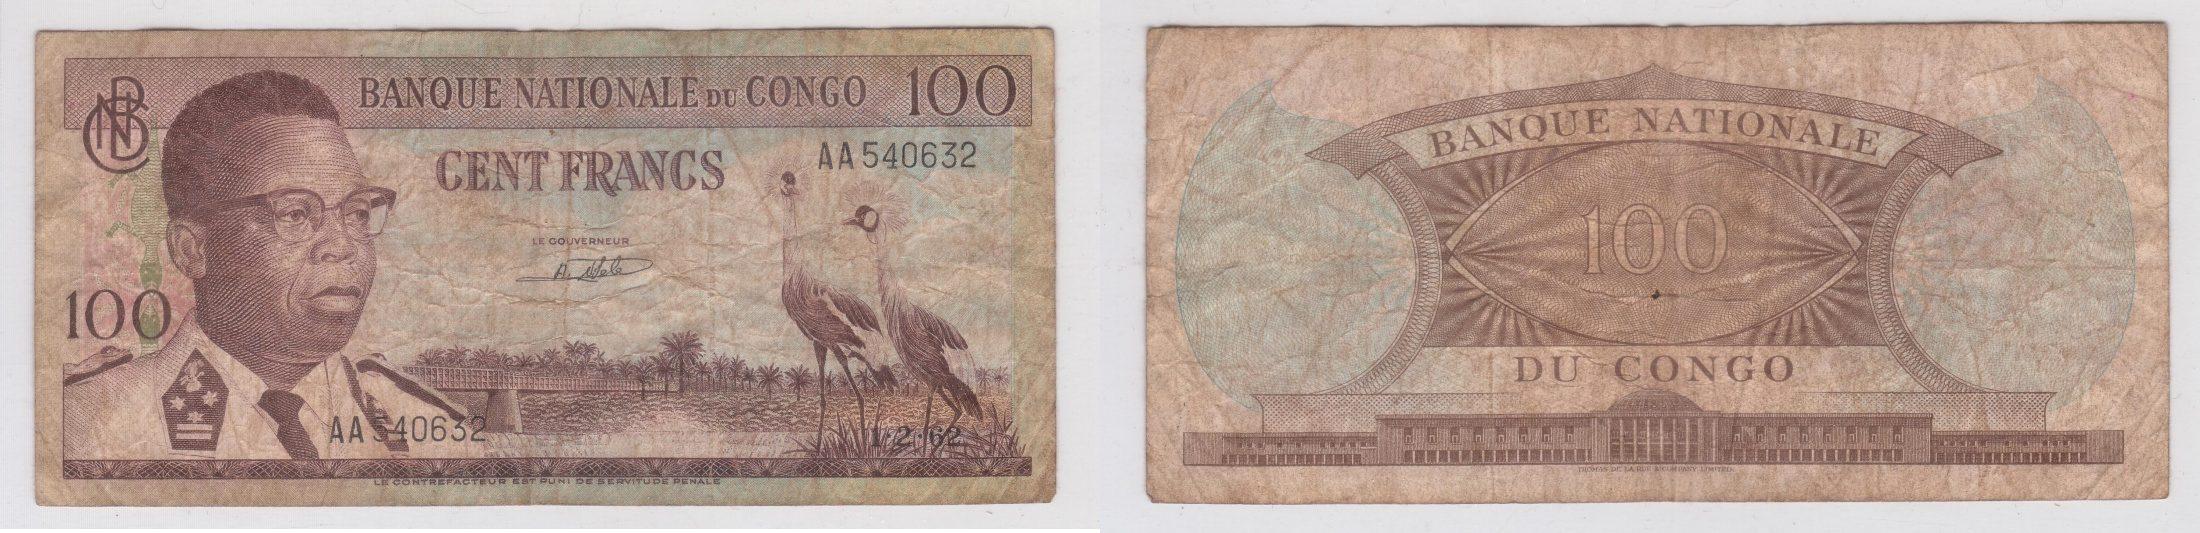 Foto Congo 100 Francs 1 2 1962